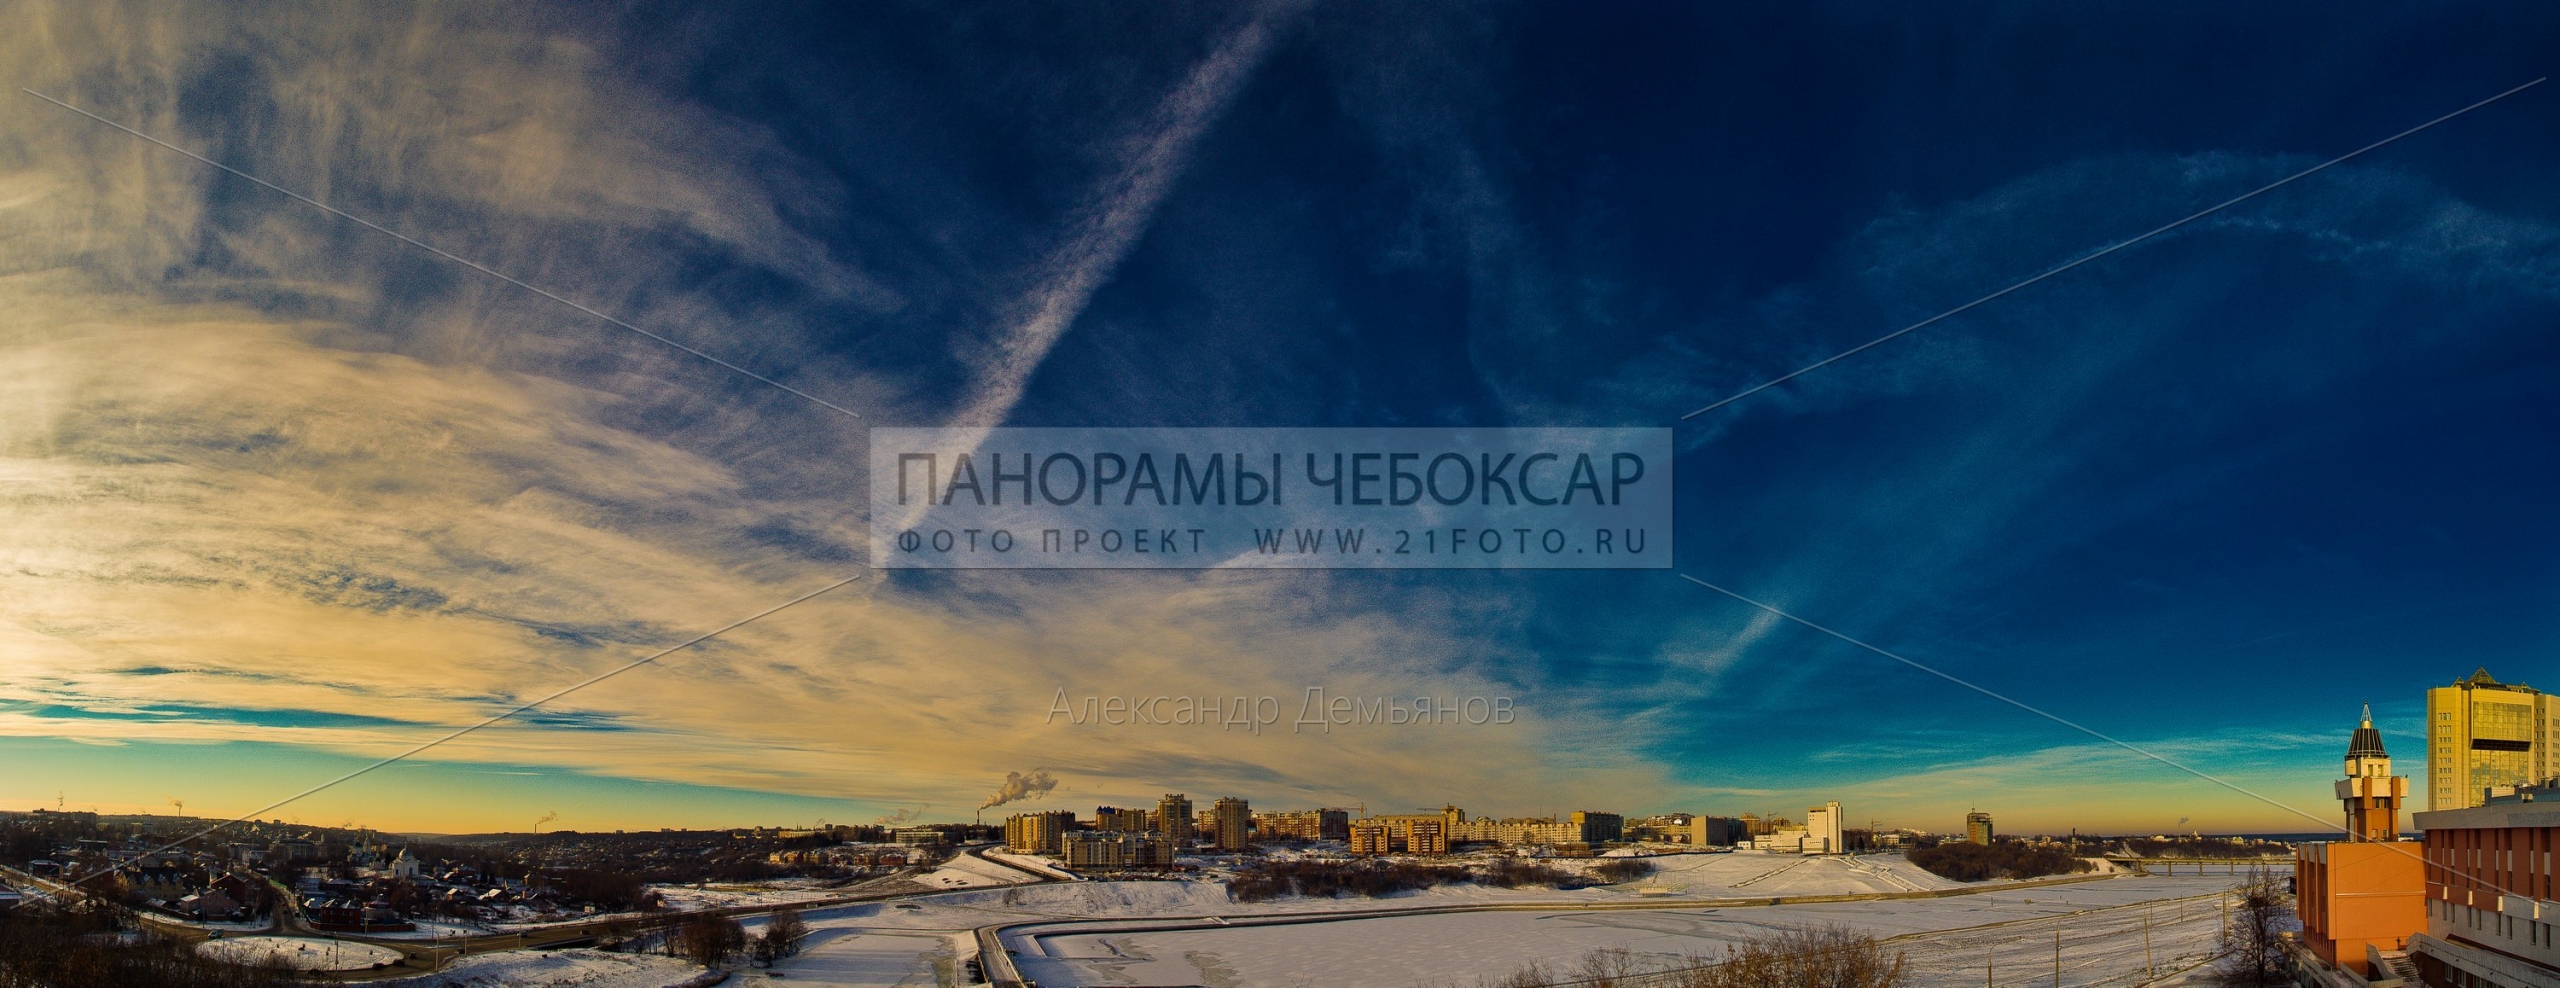 Панорамы и фотографии Чебоксар